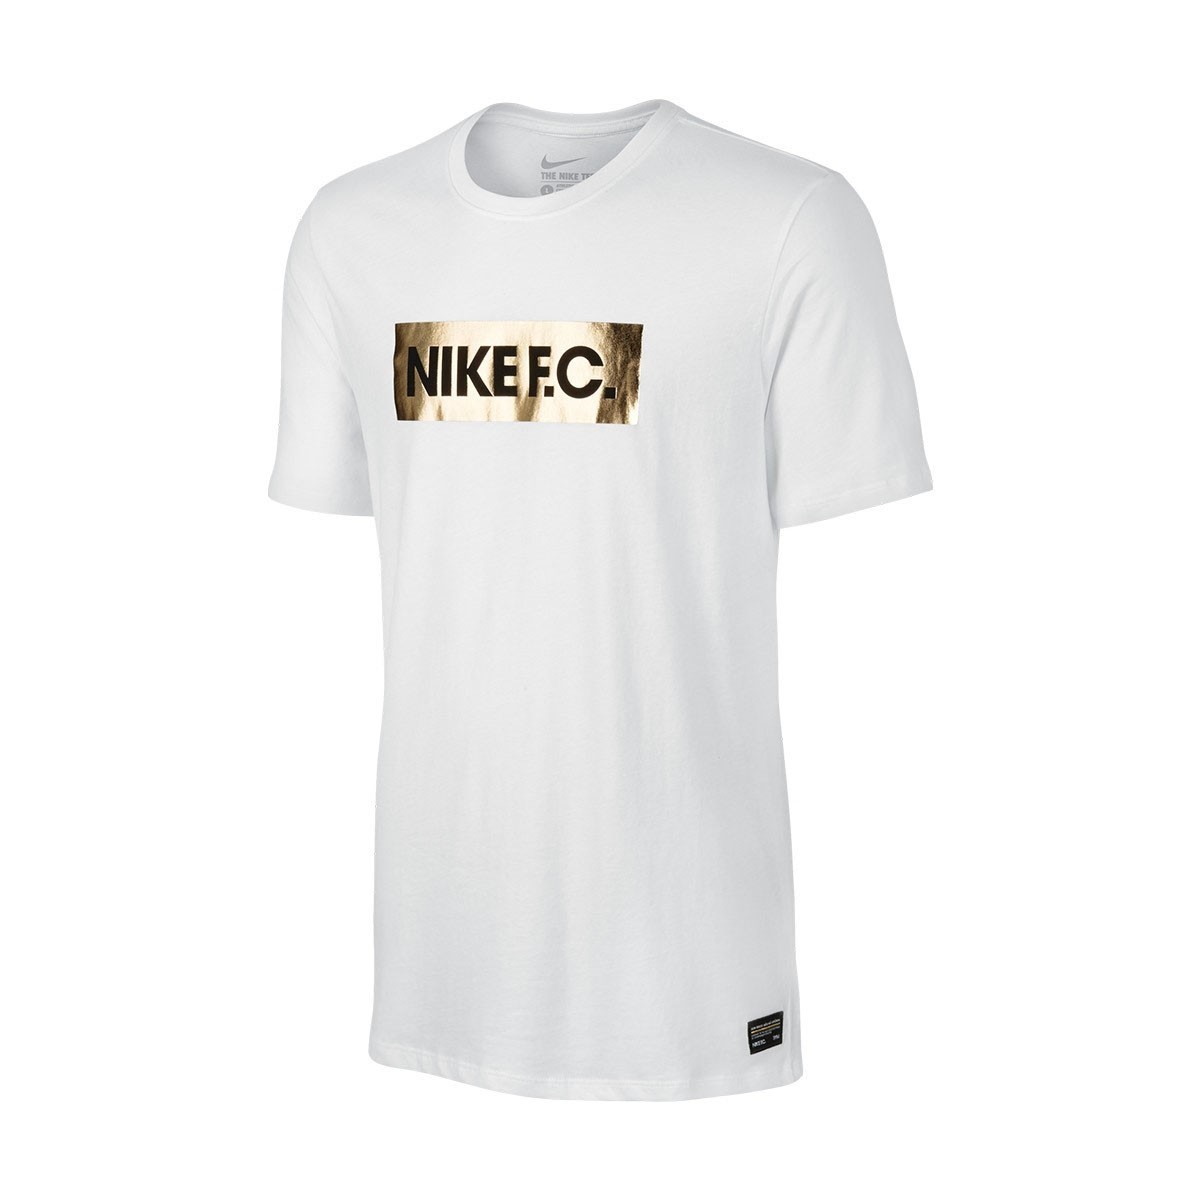 Nike NIKE FC FOIL TEE 